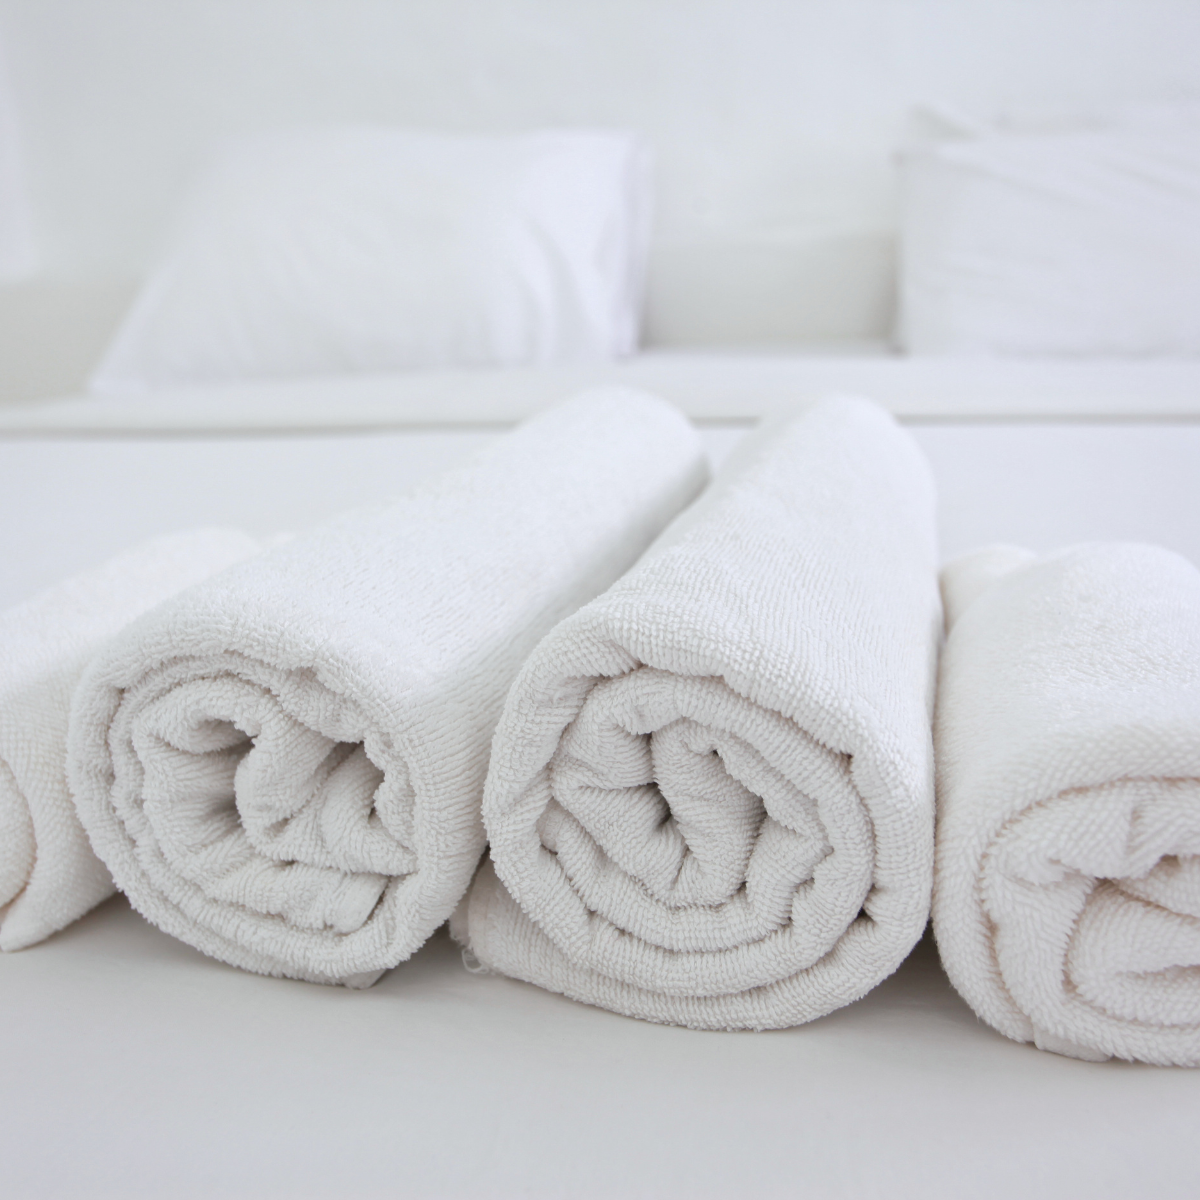 Tutti i segreti degli asciugamani d'albergo - Pink Ant SL